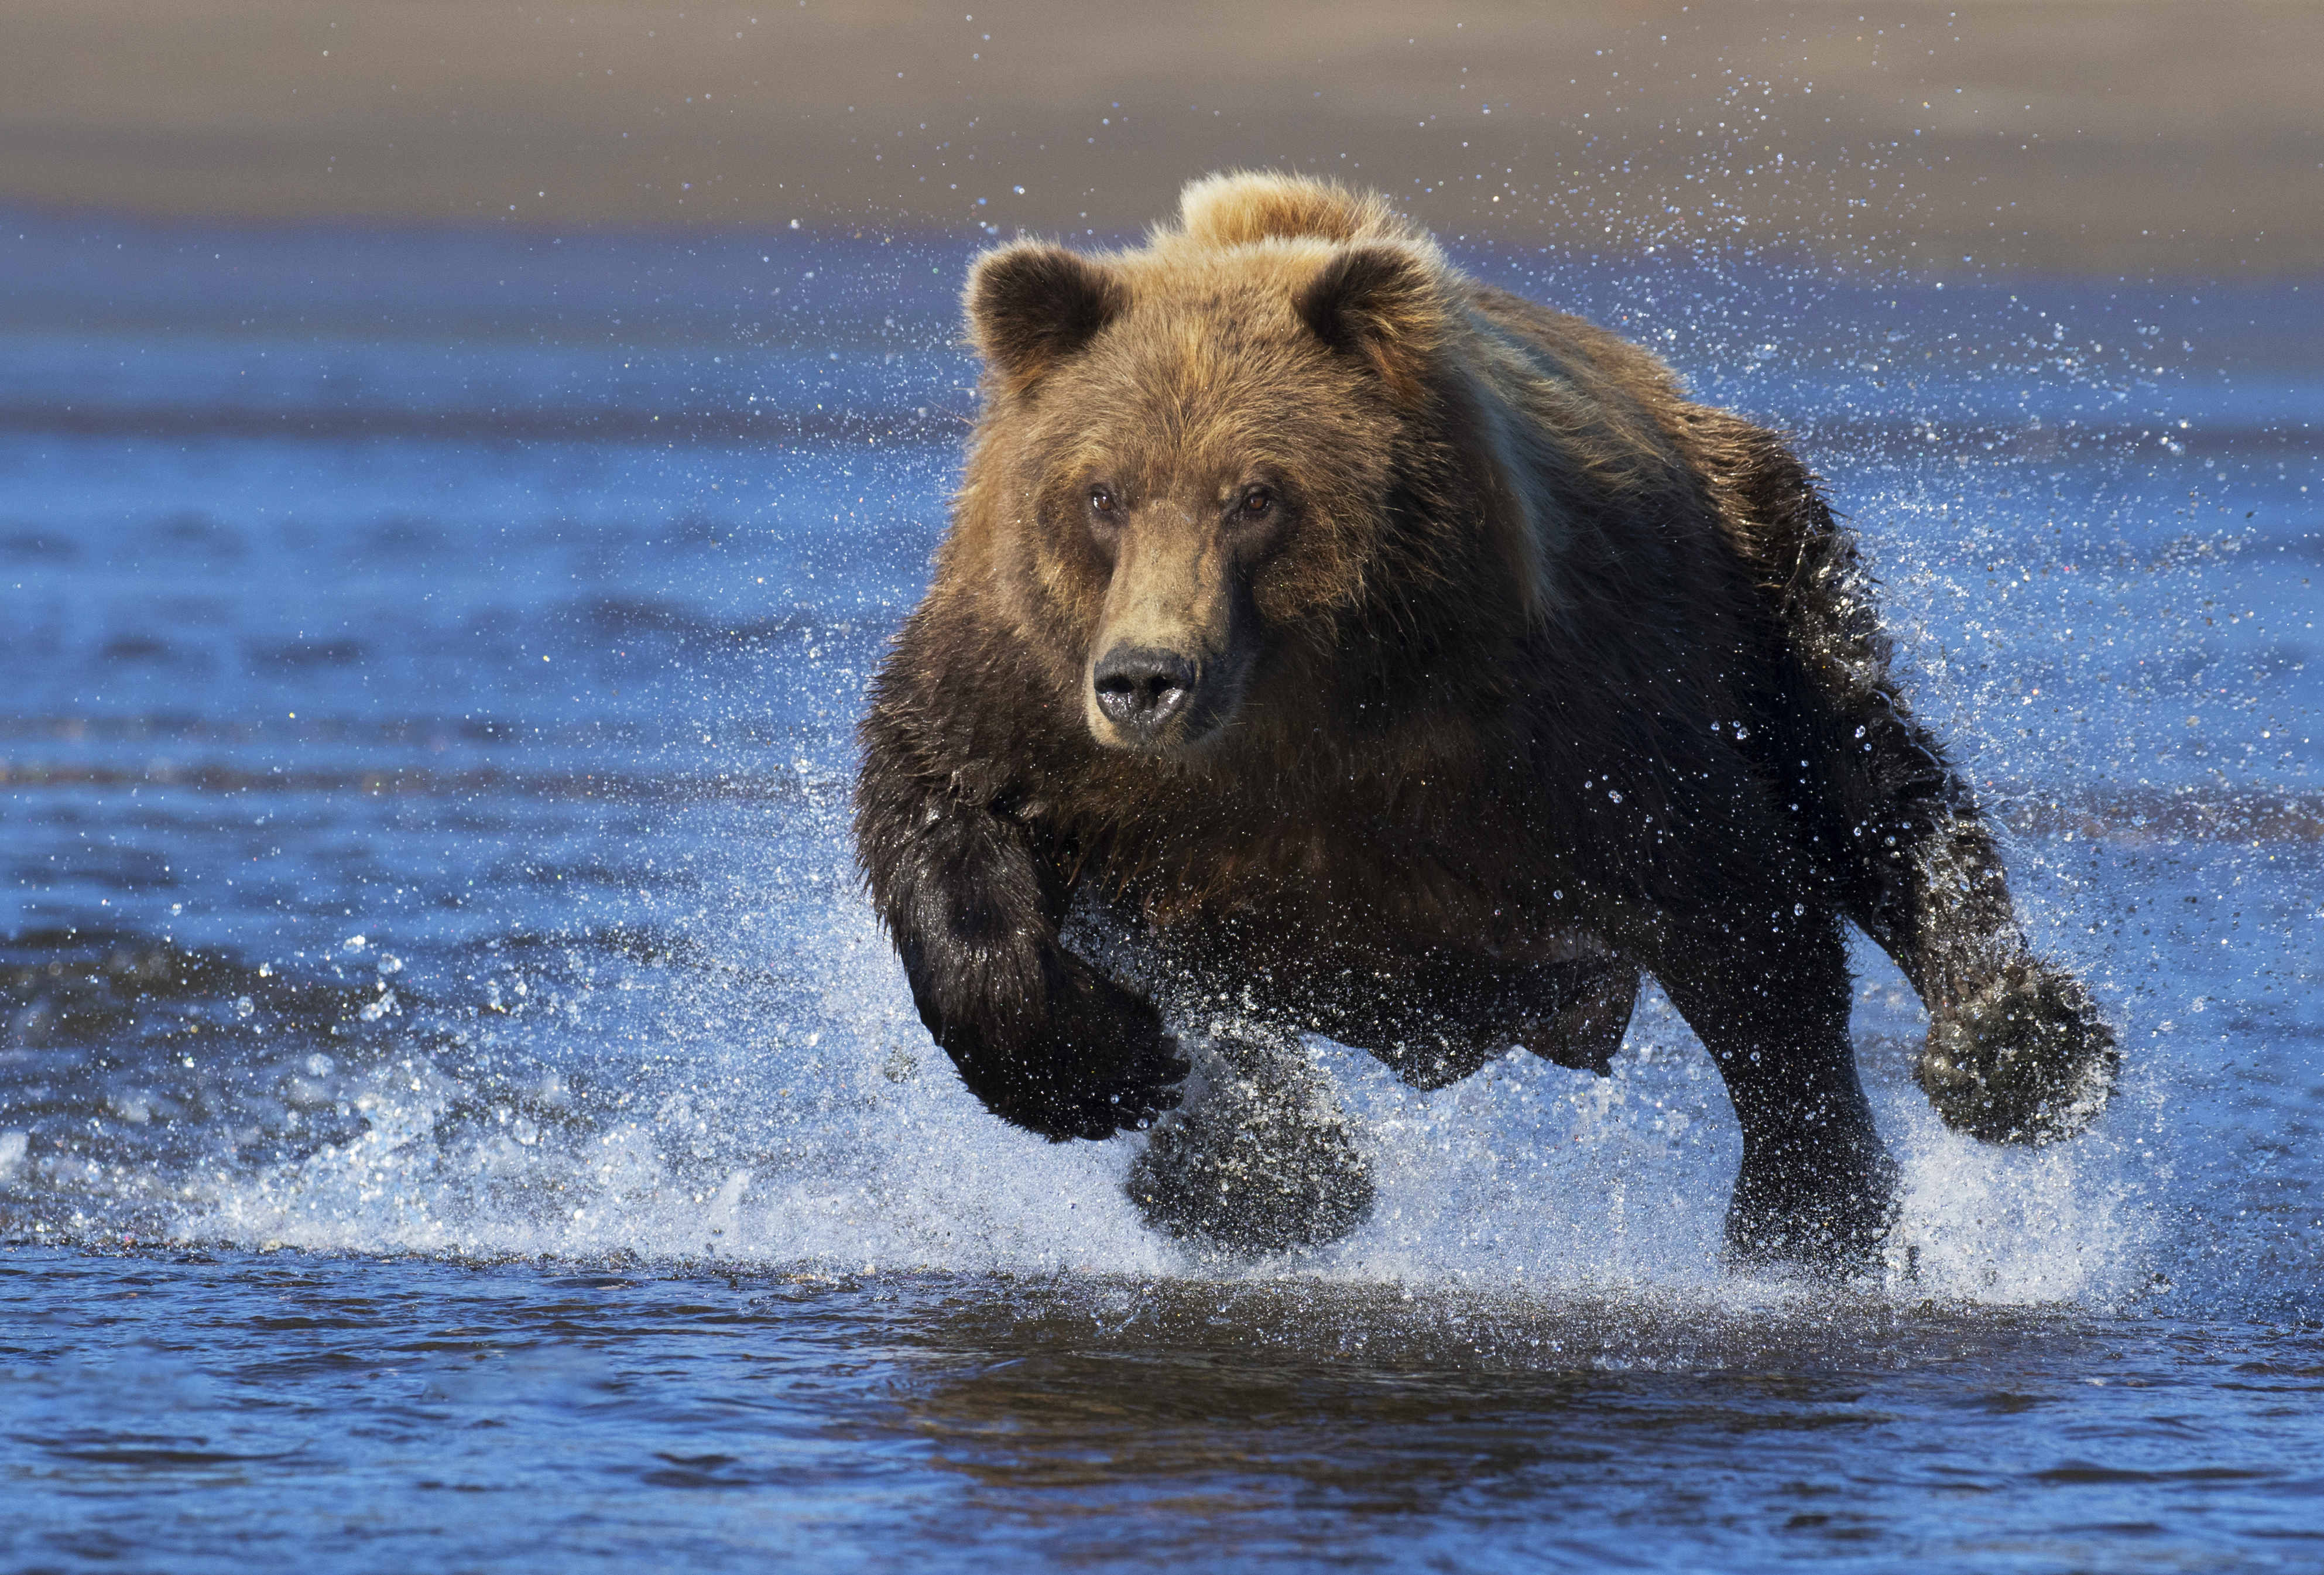 Скачать обои бесплатно Животные, Вода, Медведи, Всплеск, Медведь картинка на рабочий стол ПК